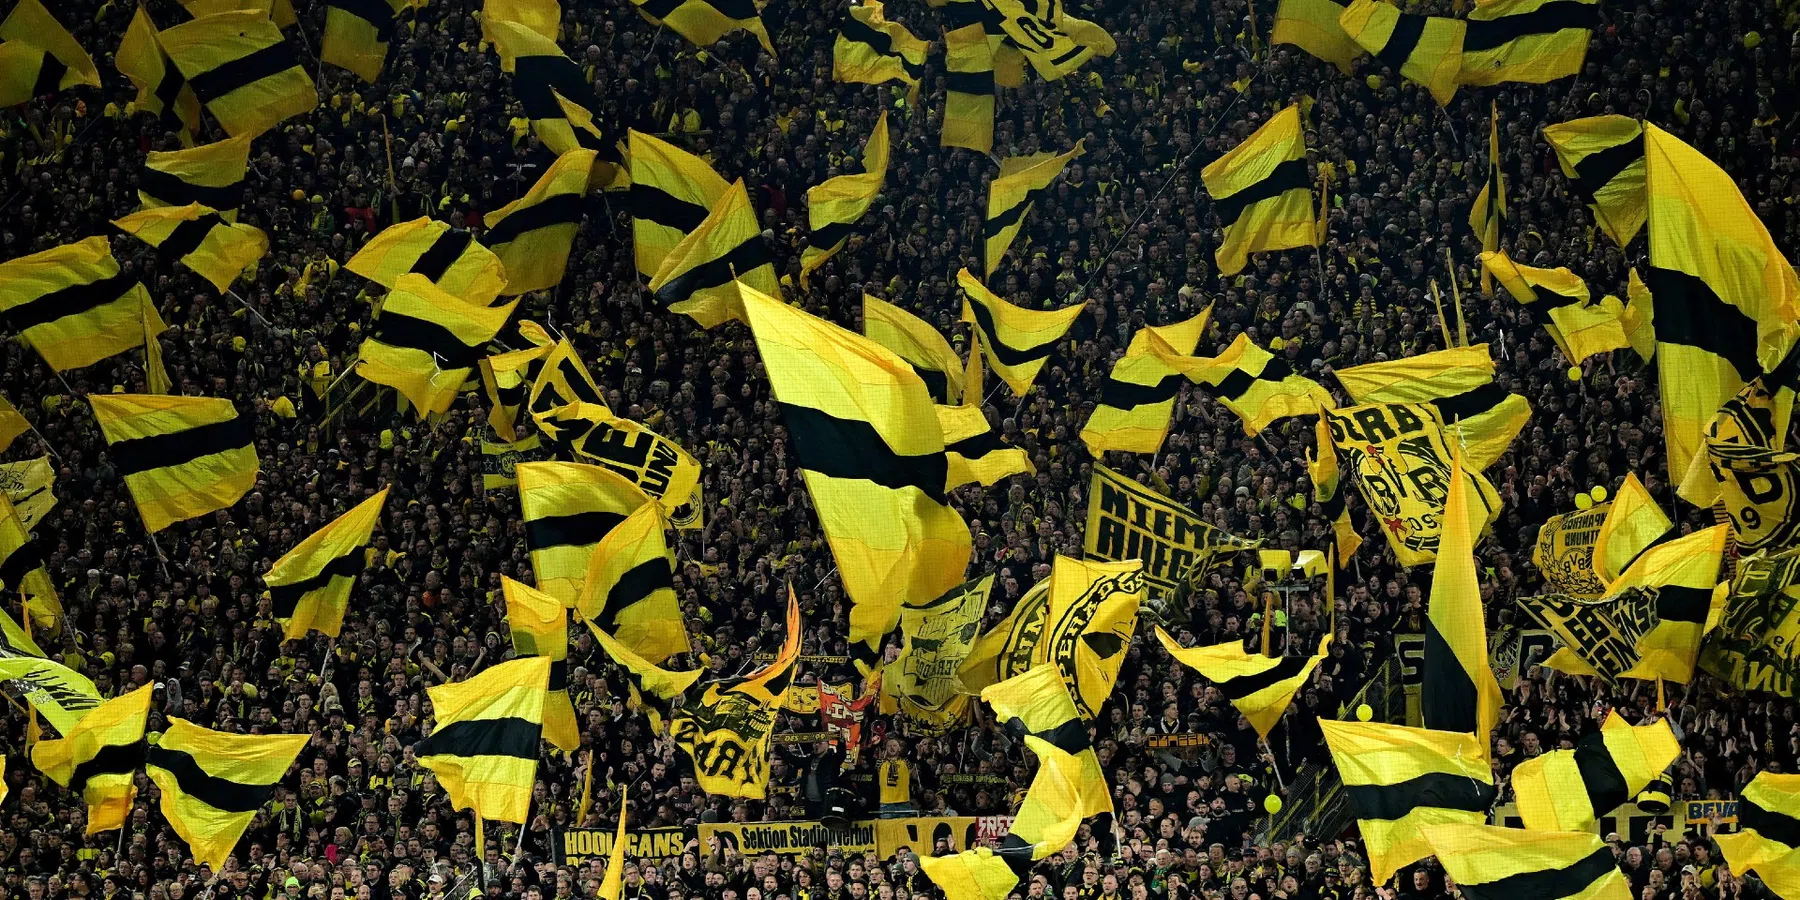 Malen scoort voor Dortmund in zesklapper